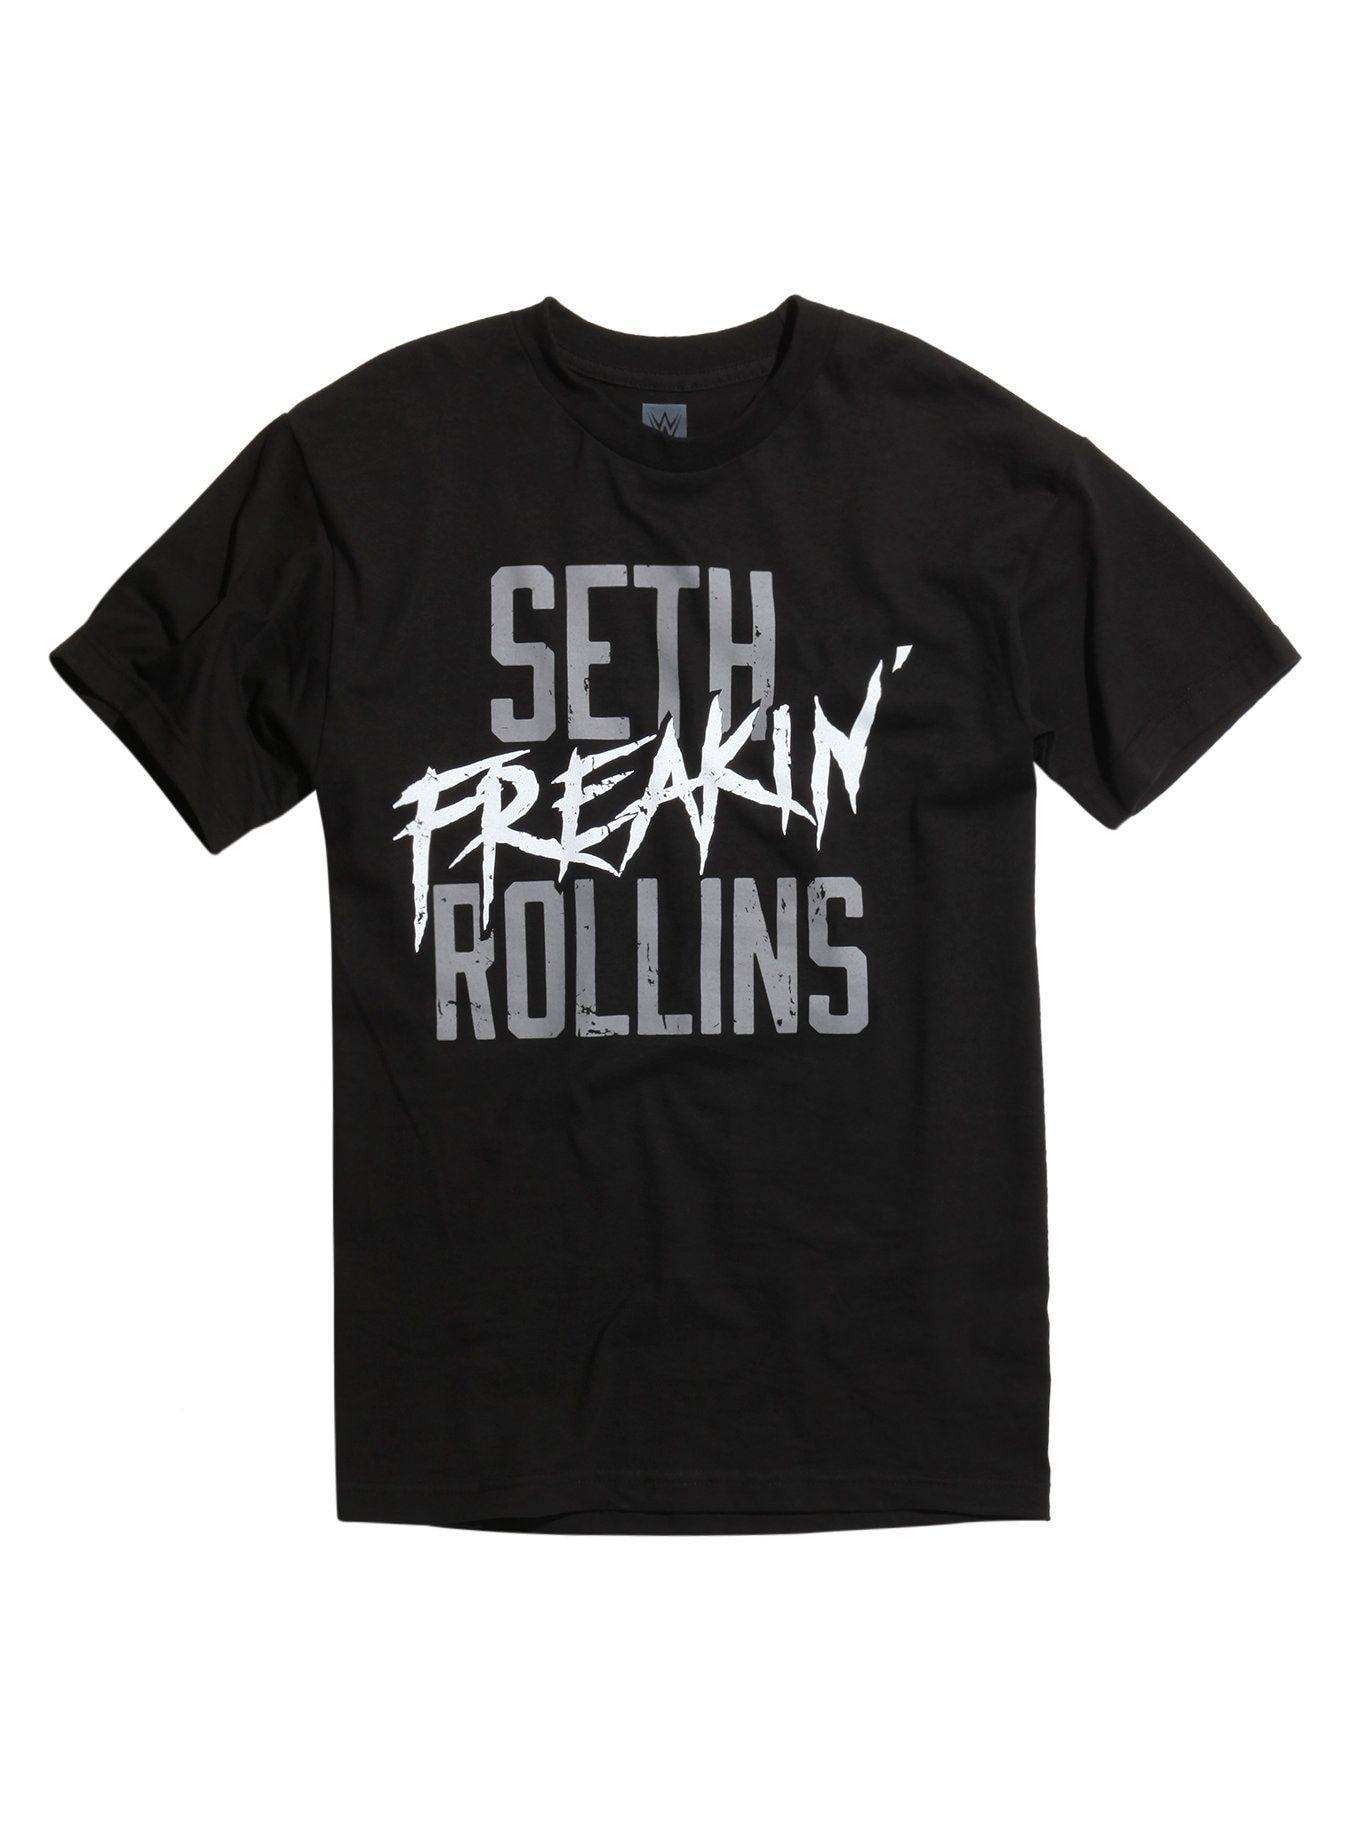 WWE Seth Rollins Logo - WWE Seth Rollins Seth Freakin' Rollins T Shirt